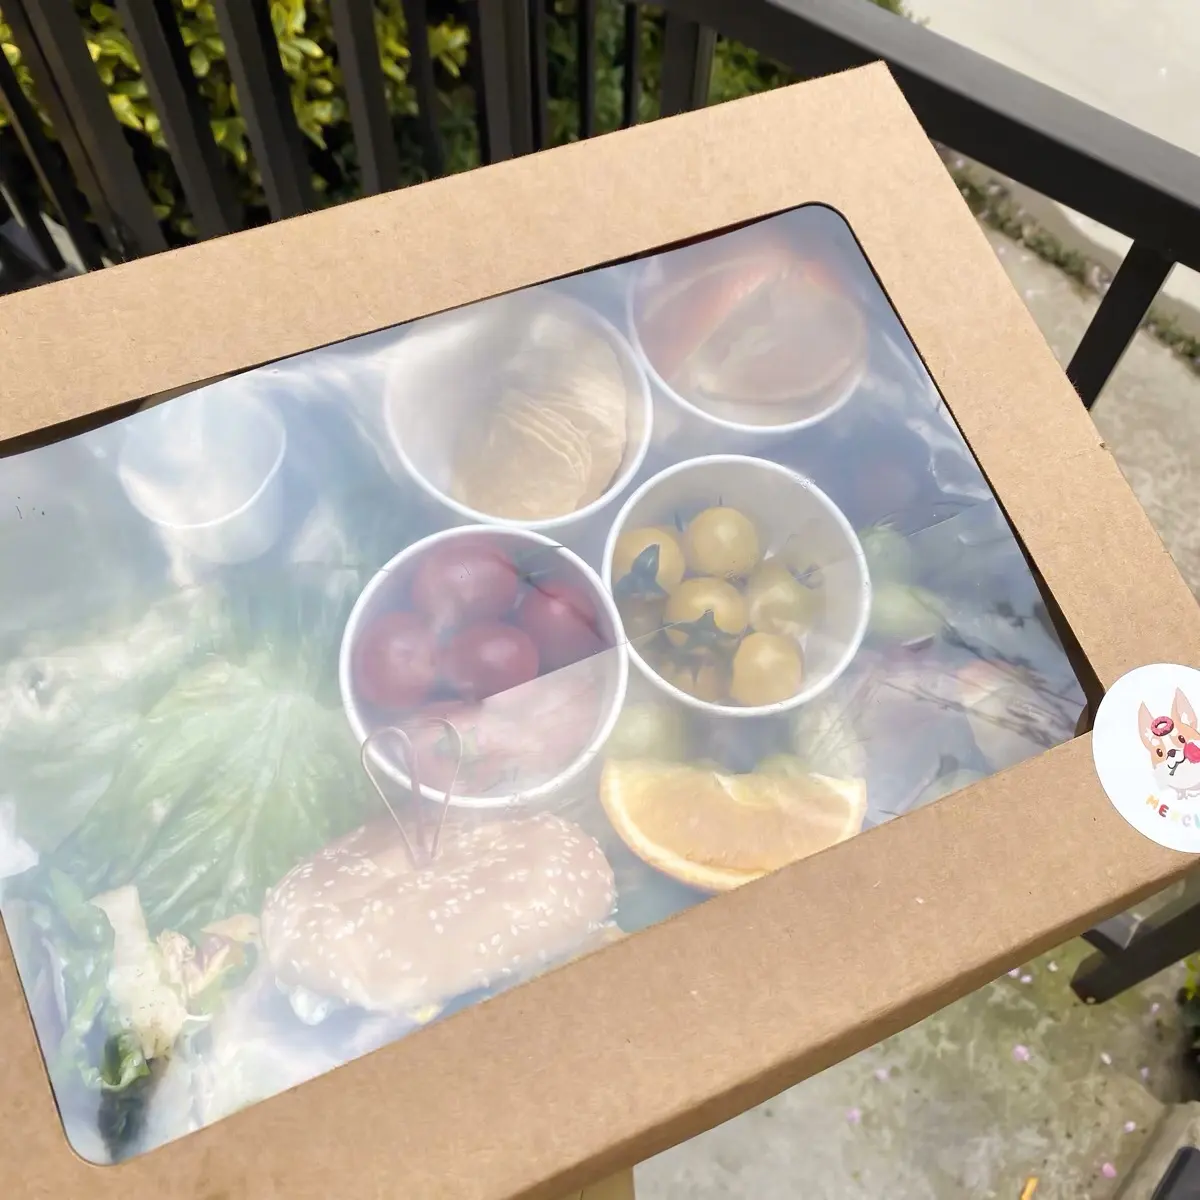 IMEE özel boyut otlatma kutusu tatlılar ekmek kutusu büyük piknik paket sandviç gıda ambalaj Kraft hediye kutusu ile temizle pencere